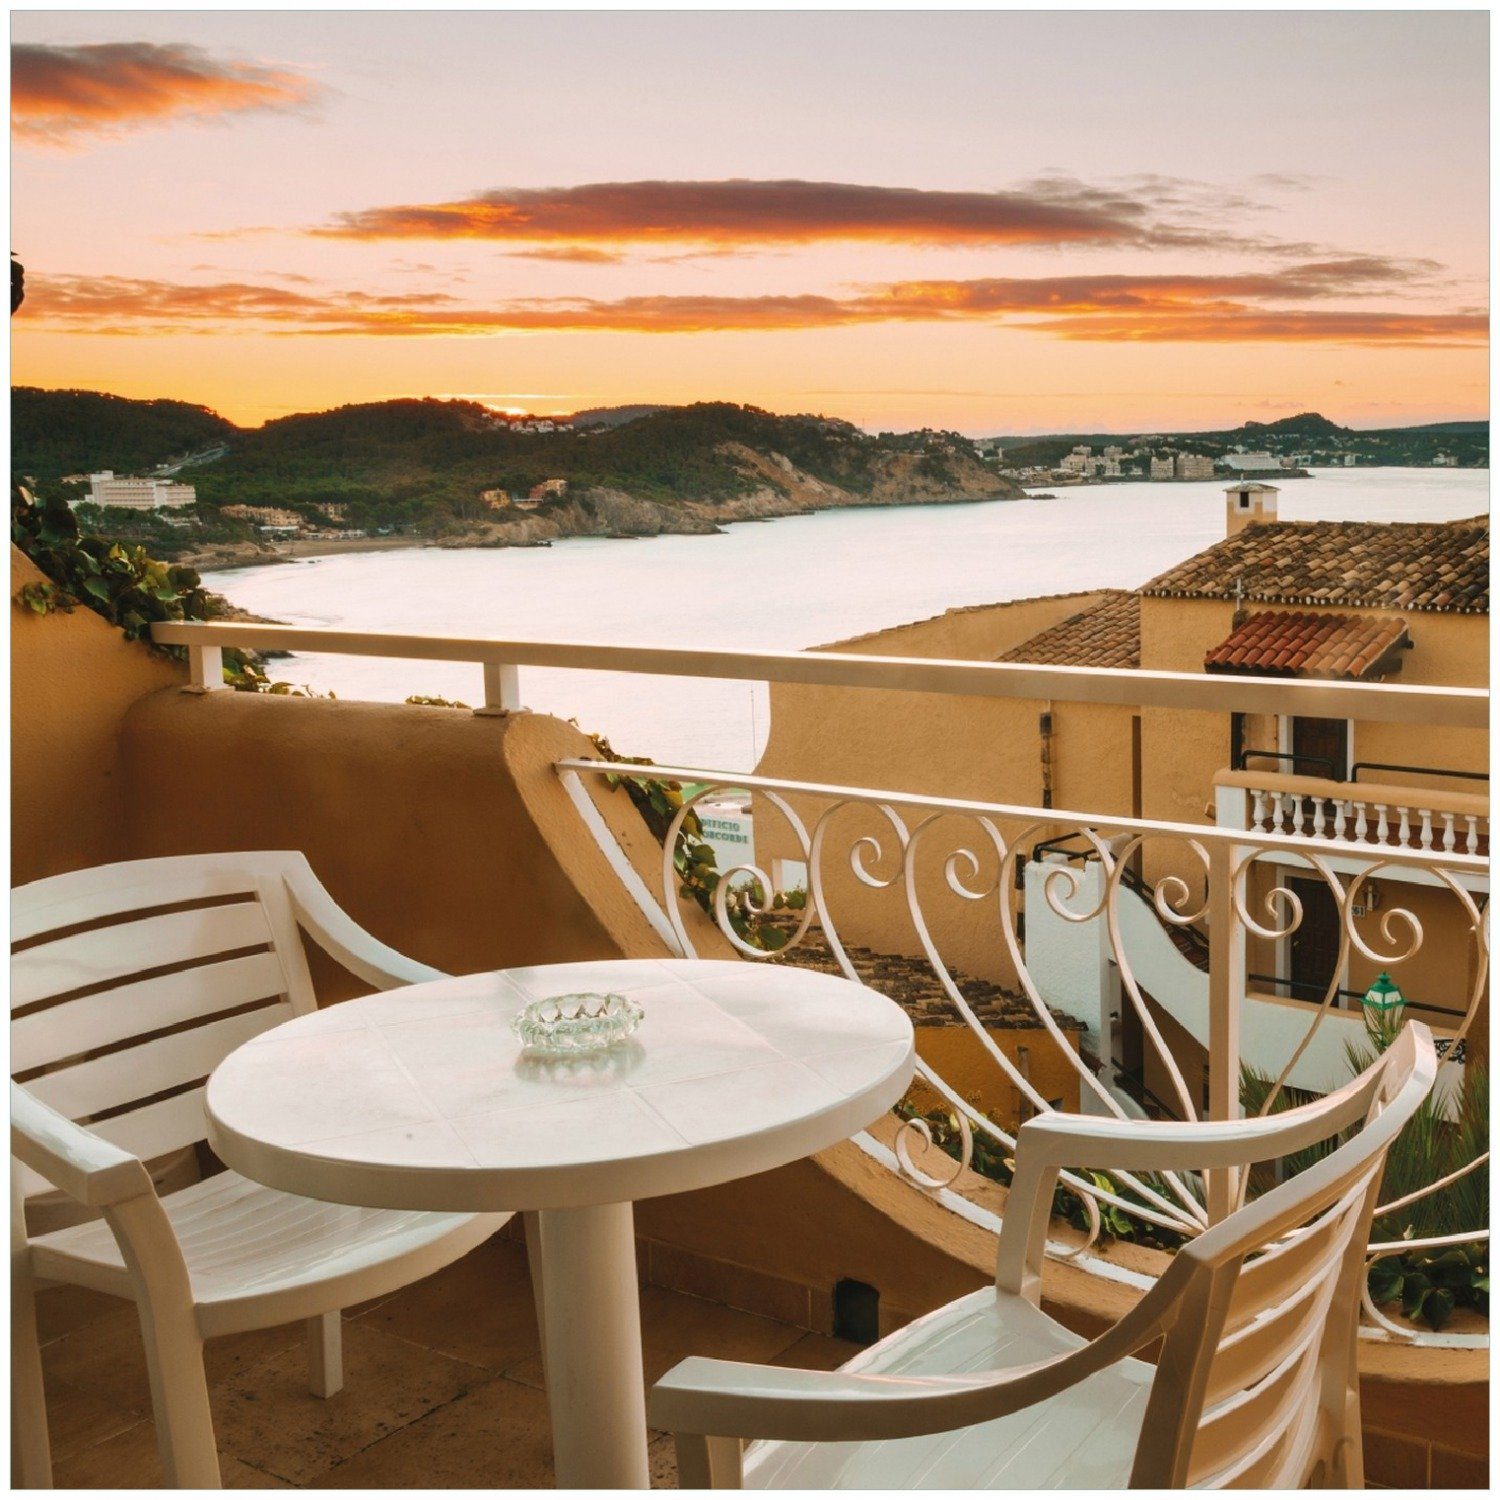 Meer Terrasse Memoboard - Sommer schönen Wallario von Ausblick auf das einer Spanien in